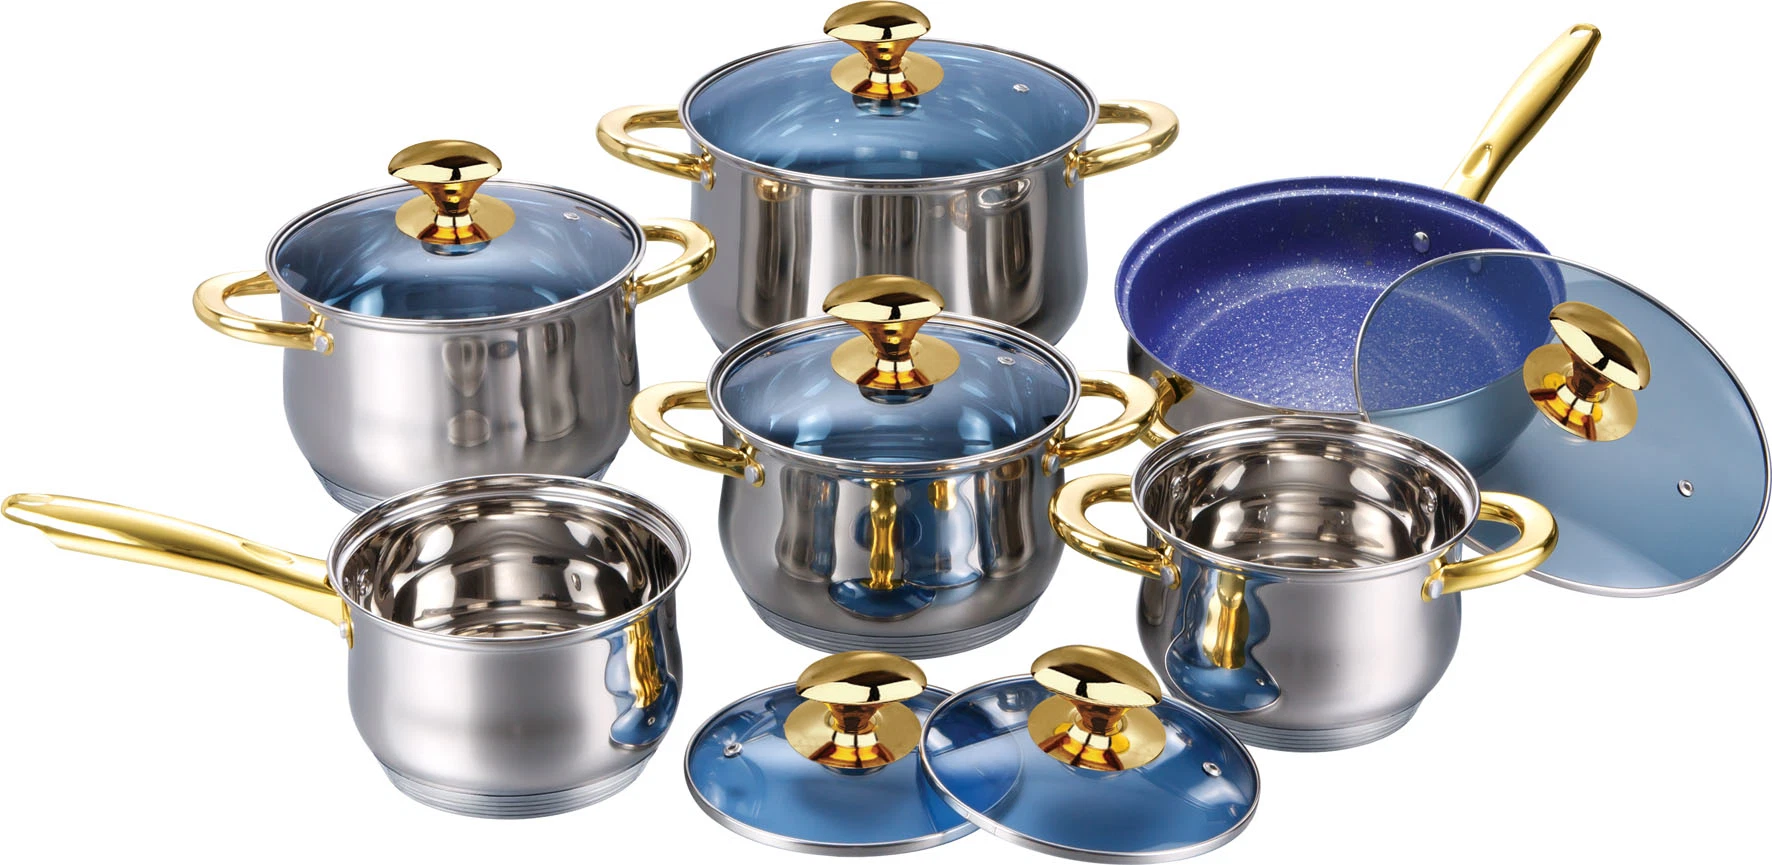 مجموعة 12PCS من أدوات الطهي ذات الصلب المقاوم للصدأ مع مقابض ذهبية وغطاء زجاجي أزرق وأدوات المطبخ الاقتصادي المناسبة لأي من أسطح الطهي مع البوتس والباناس